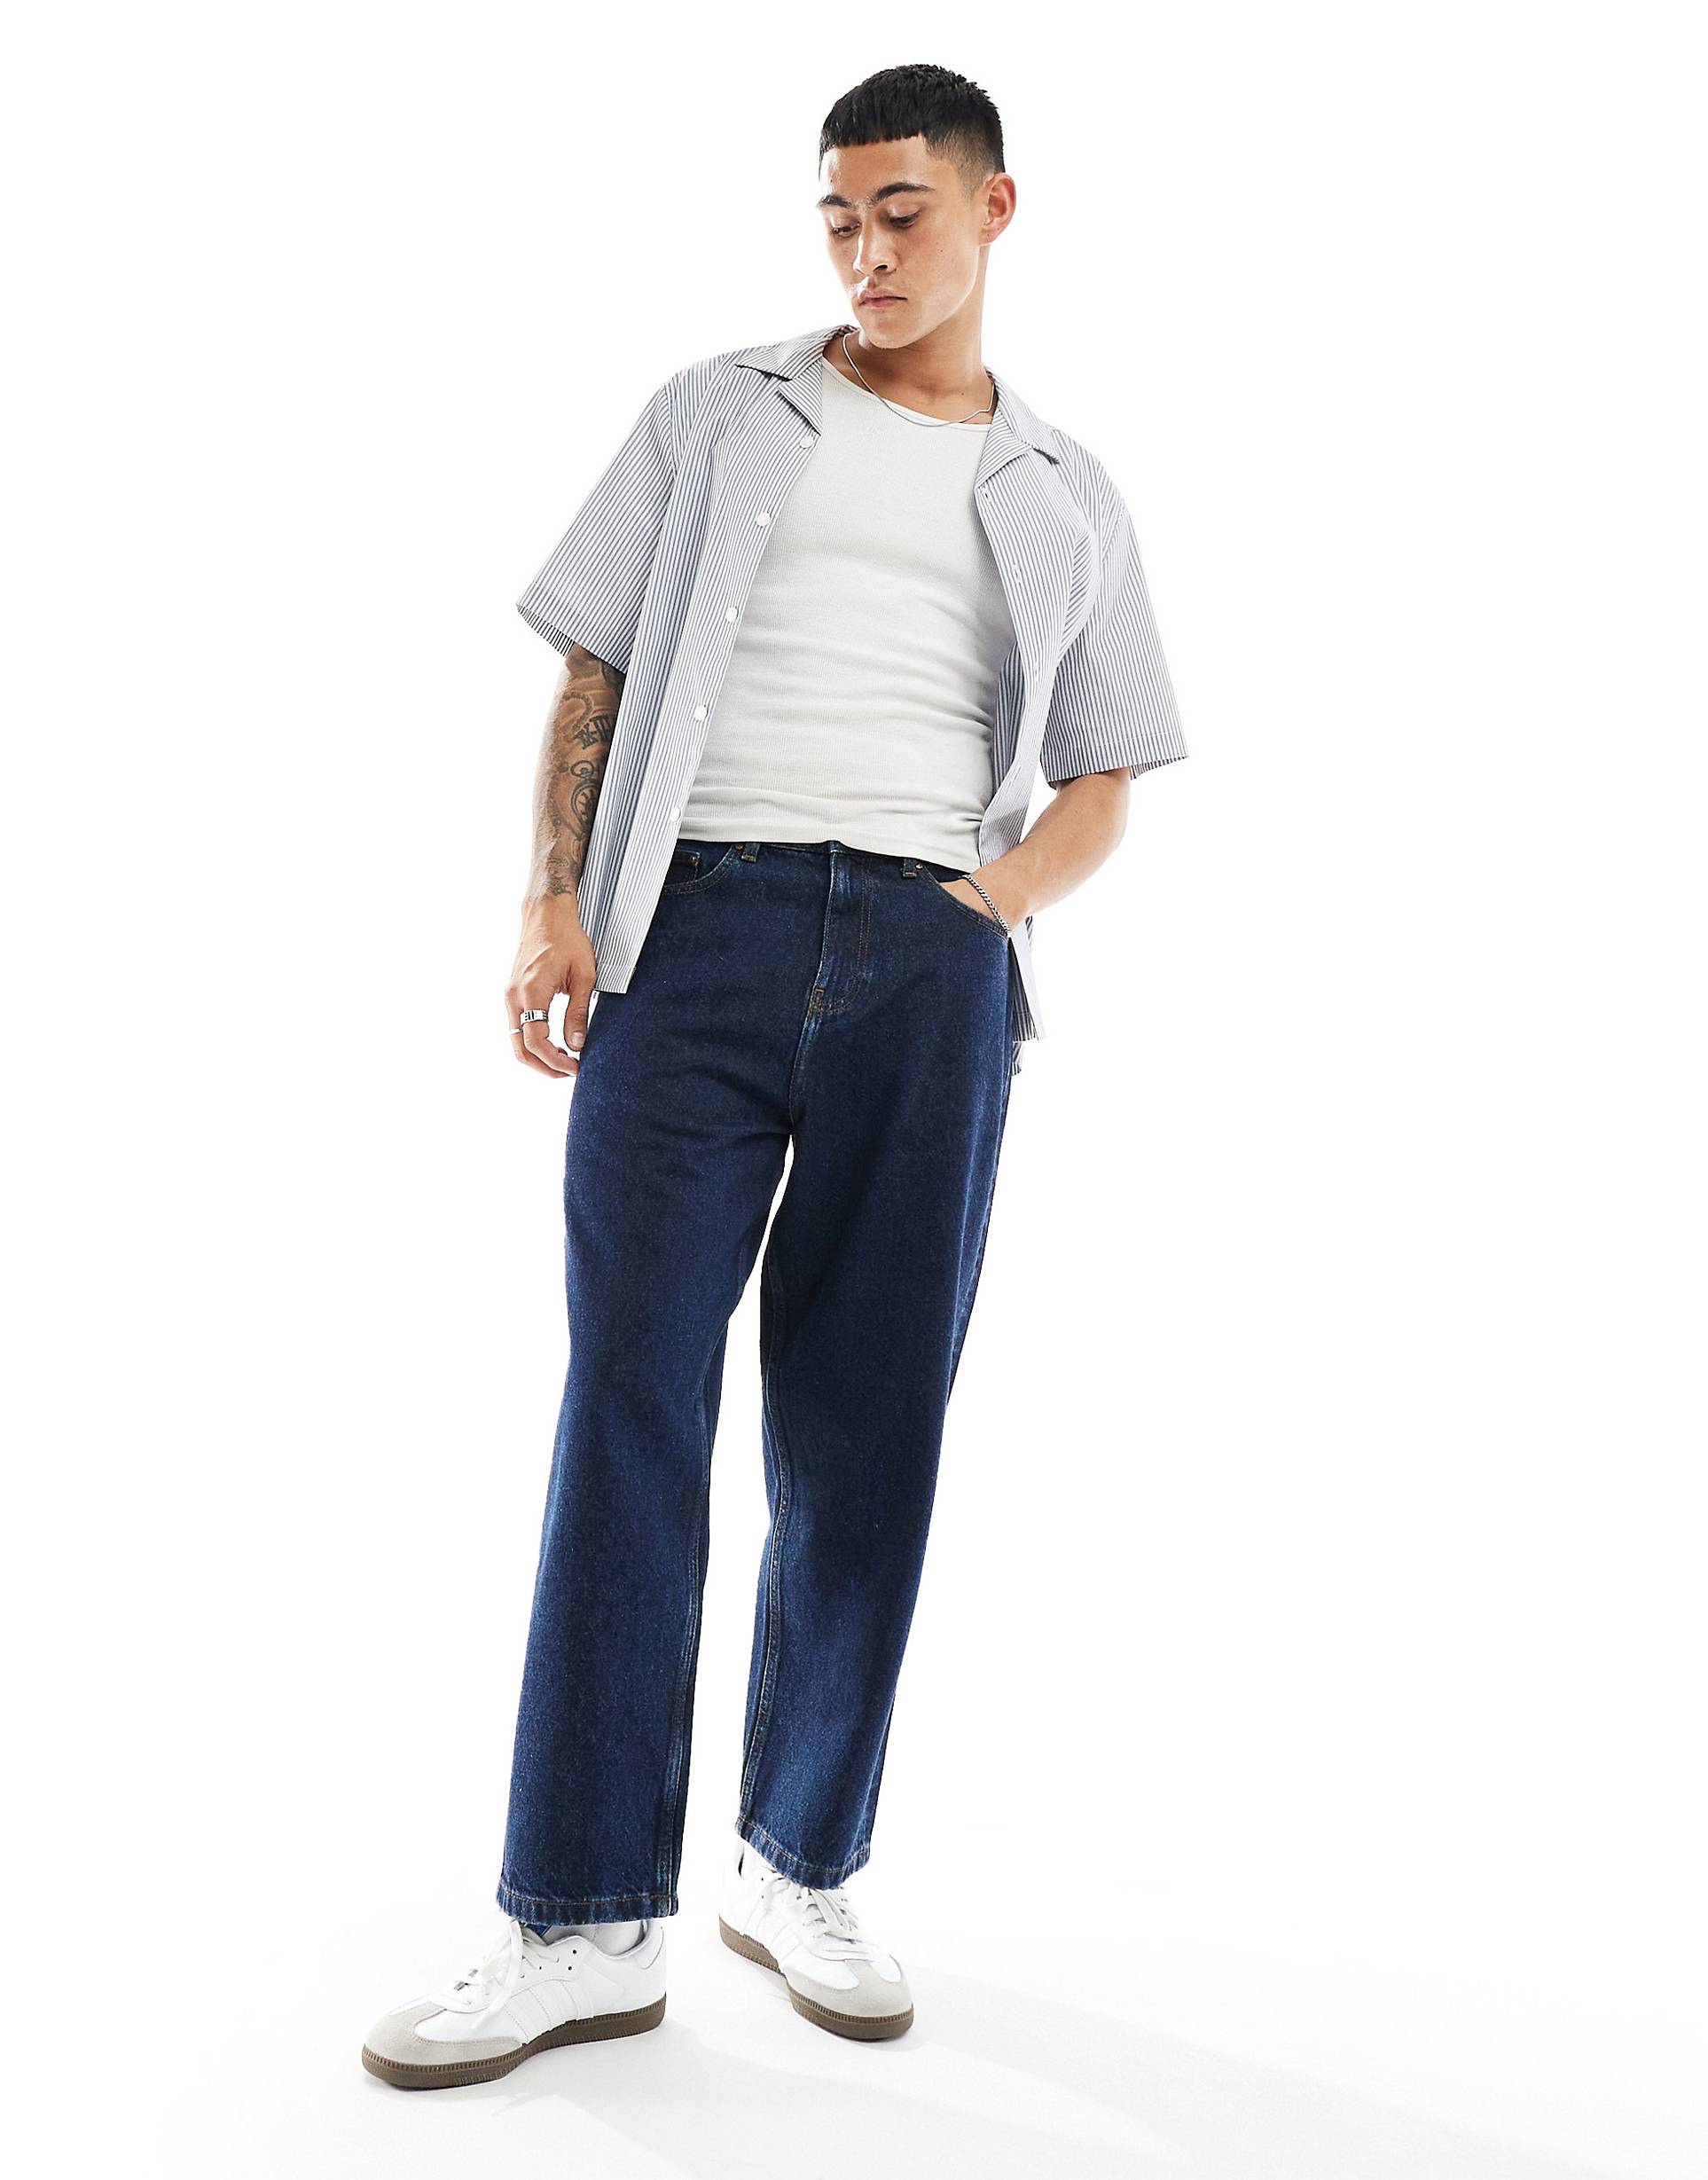 Джинсы Asos Design Oversized Tapered Fit, темно-синий джинсы bodyflirt темно синие 40 размер